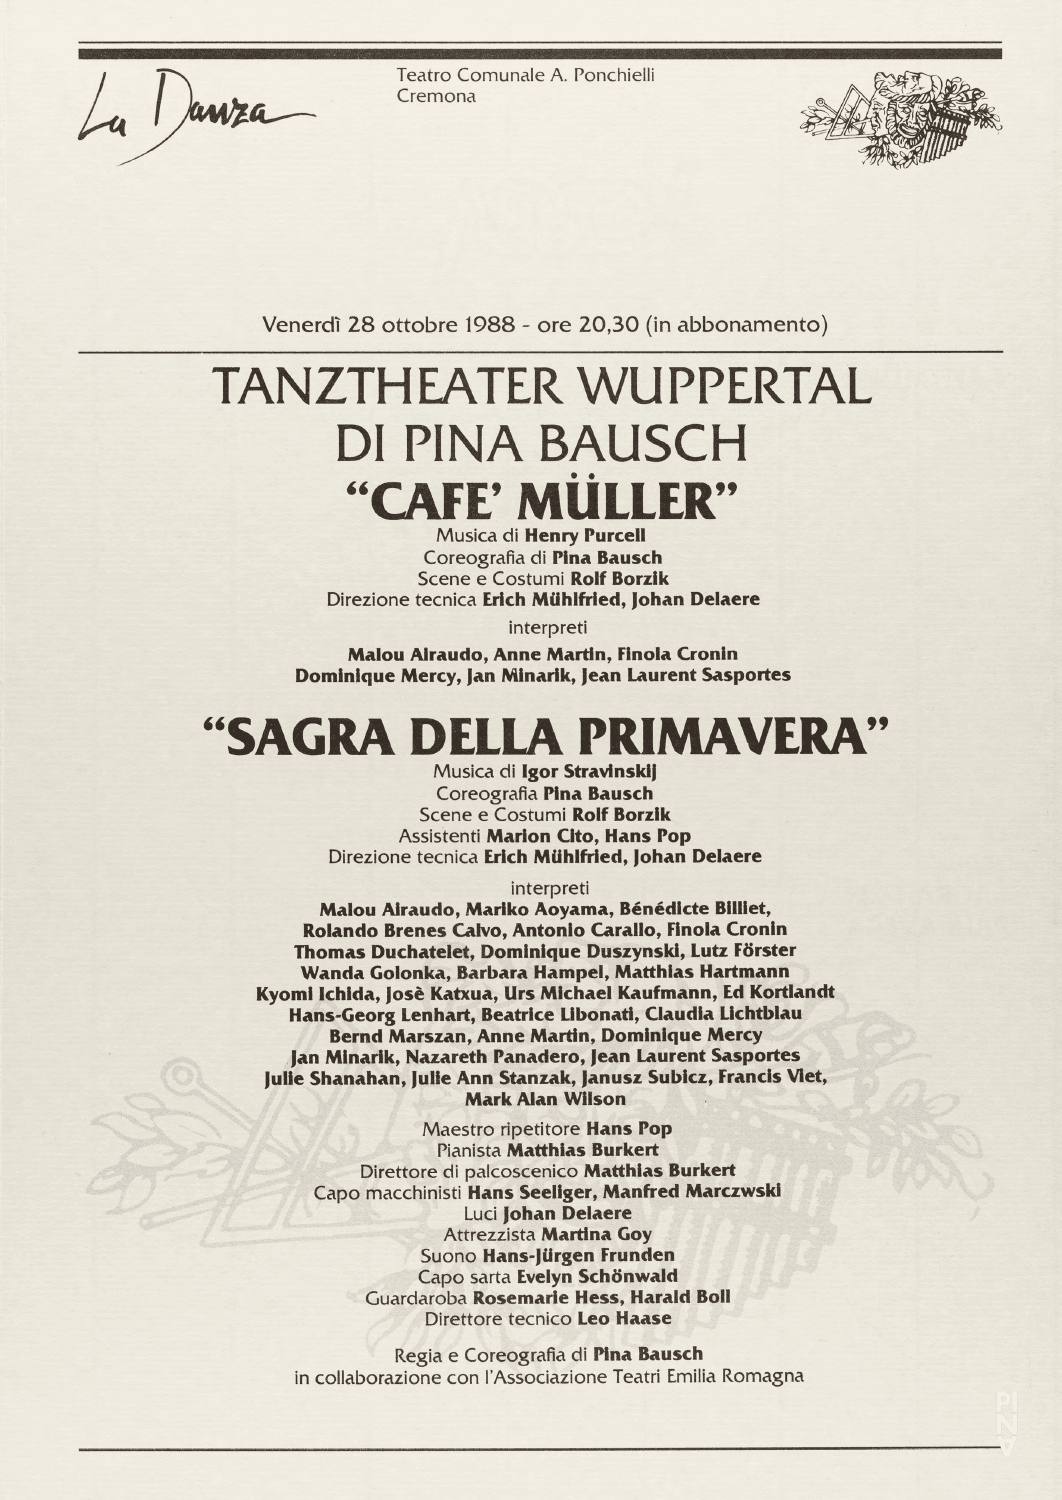 Abendzettel zu „Café Müller“ und „Das Frühlingsopfer“ von Pina Bausch mit Tanztheater Wuppertal in Cremona, 28. Oktober 1988